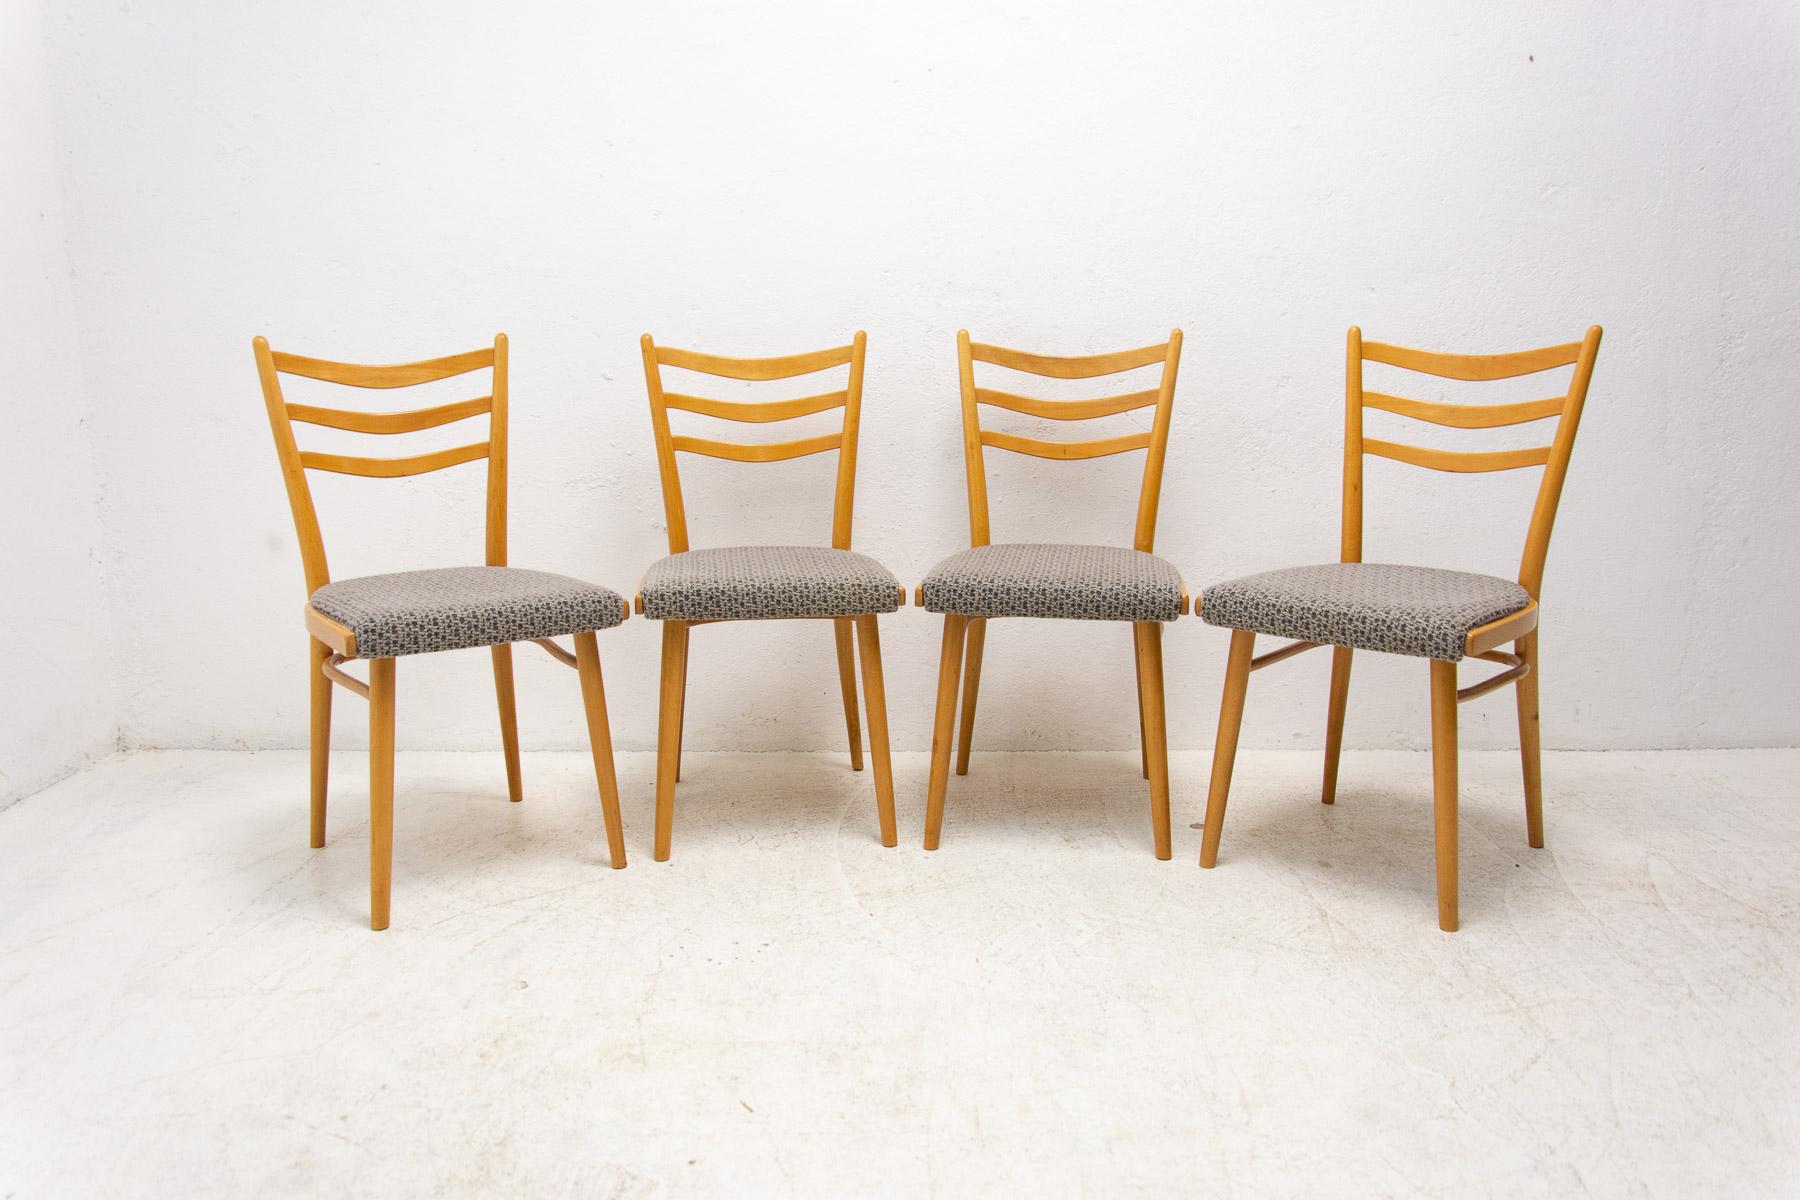 Satz von vier gepolsterten Esszimmerstühlen, hergestellt in der ehemaligen Tschechoslowakei von der Firma Jitona in den 1960er Jahren. Die Stühle sind aus Buchenholz gefertigt. Sehr interessante Formgebung. Die Polsterung und das Holz sind in gutem